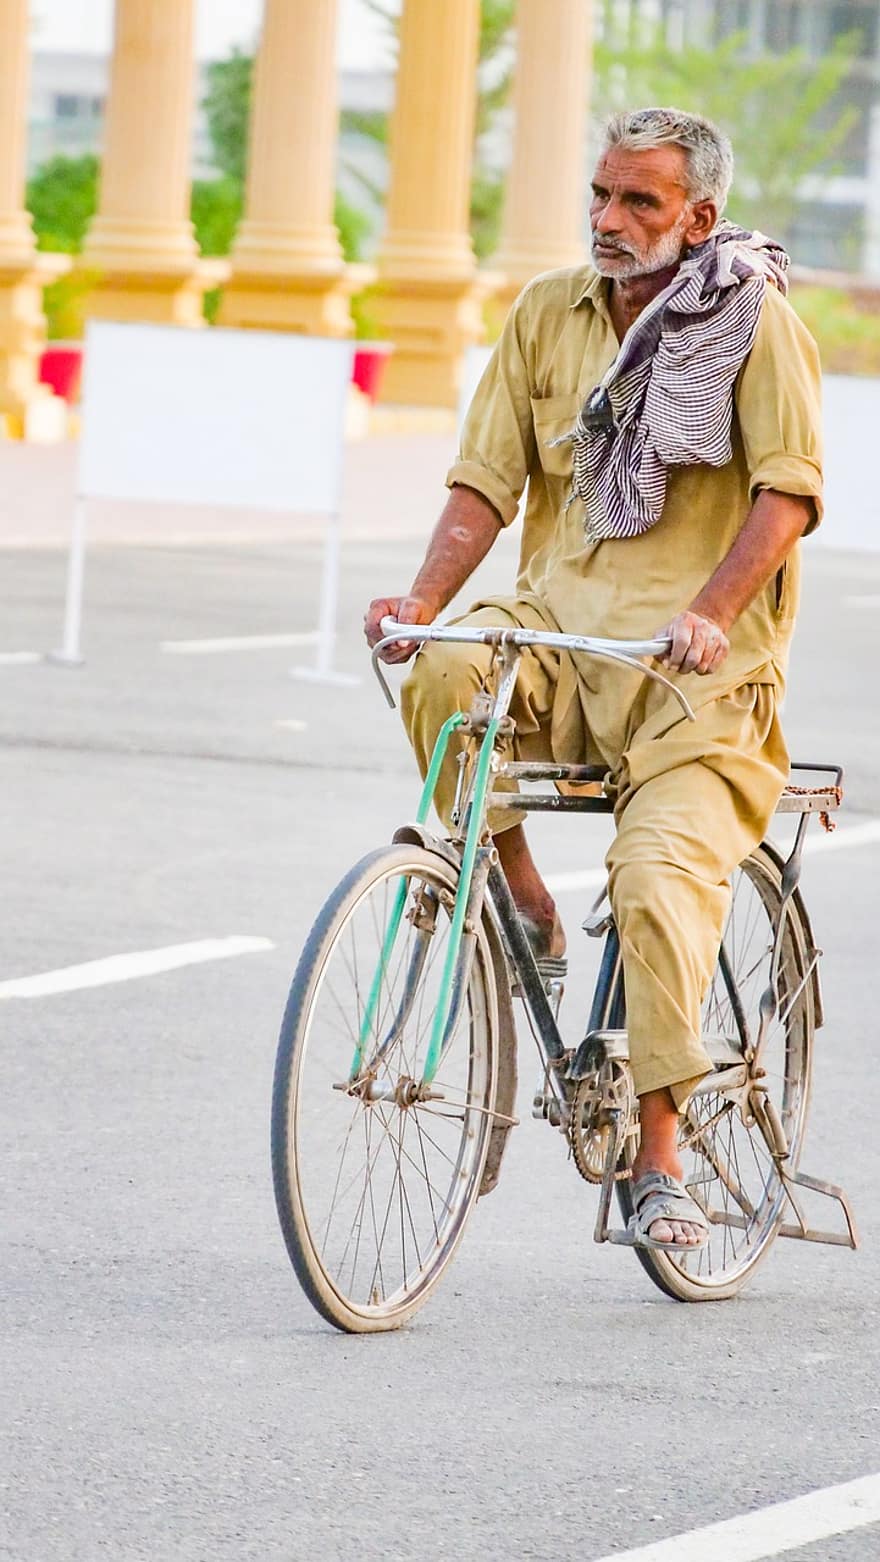 vieil homme, les personnes âgées, vélo, homme à bicyclette, bicyclette